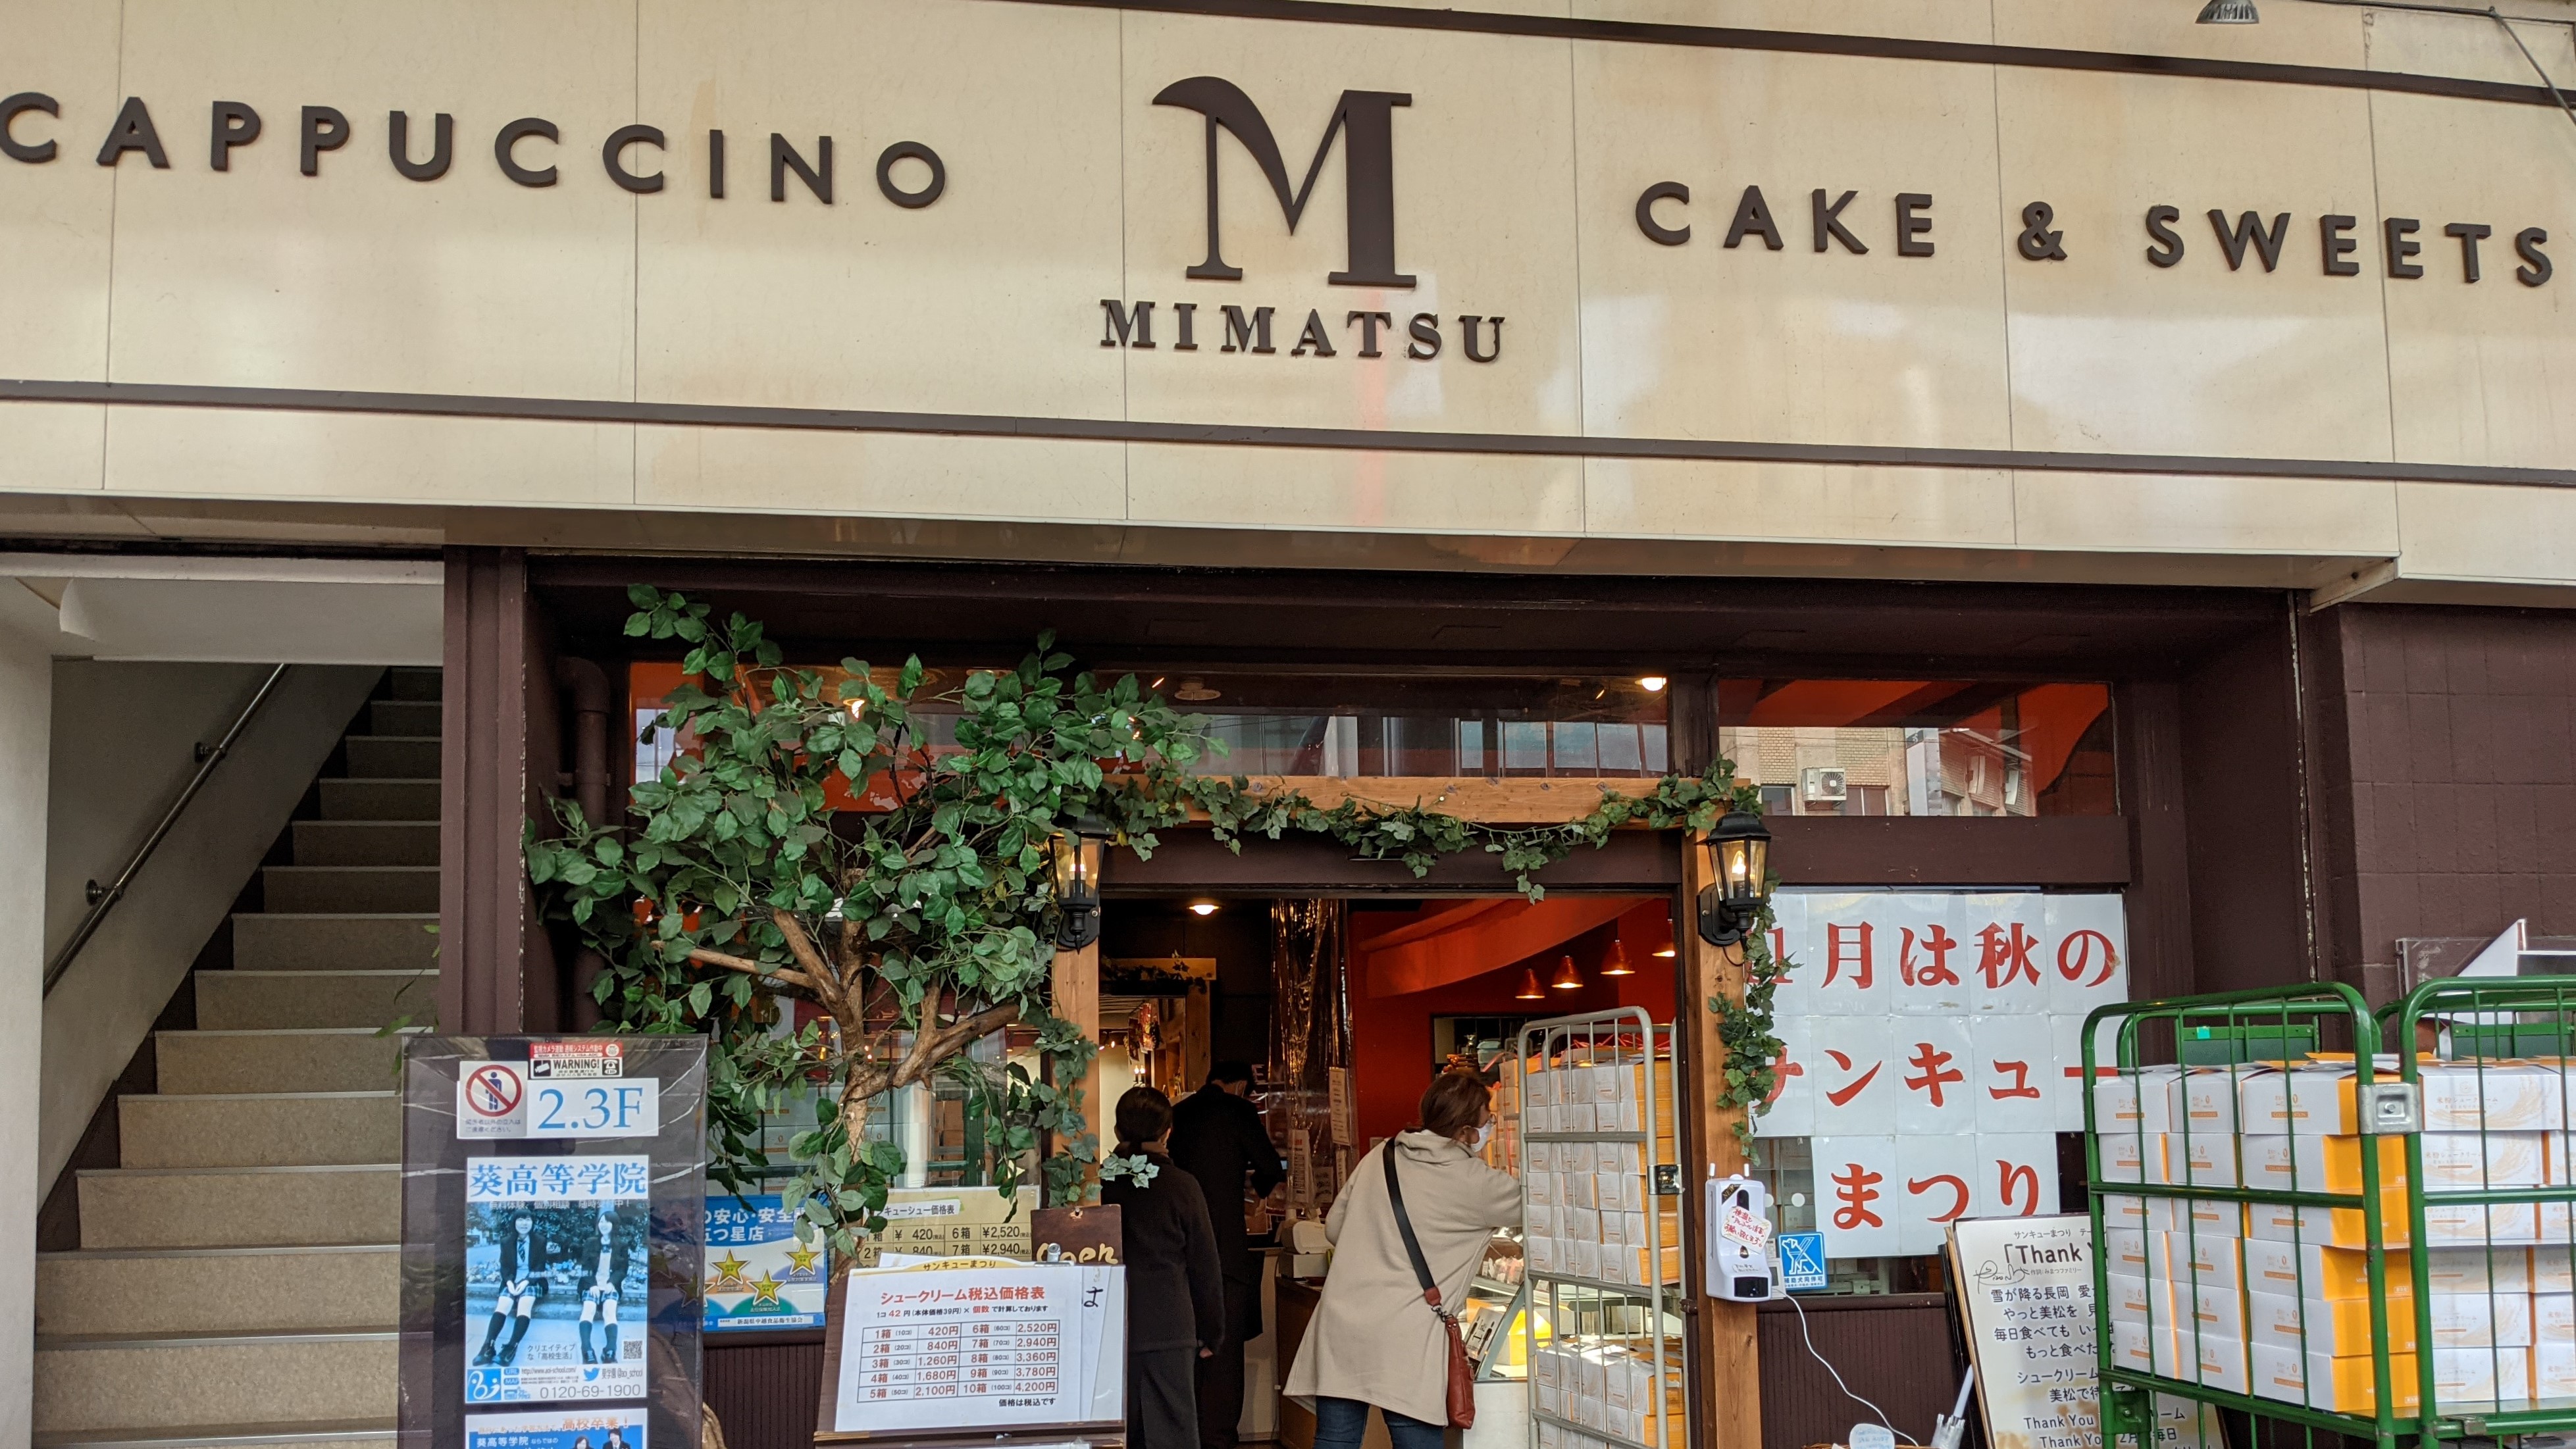 Nagaoka Highlights: Mimatsu Café’s “San-Kyu Matsuri”